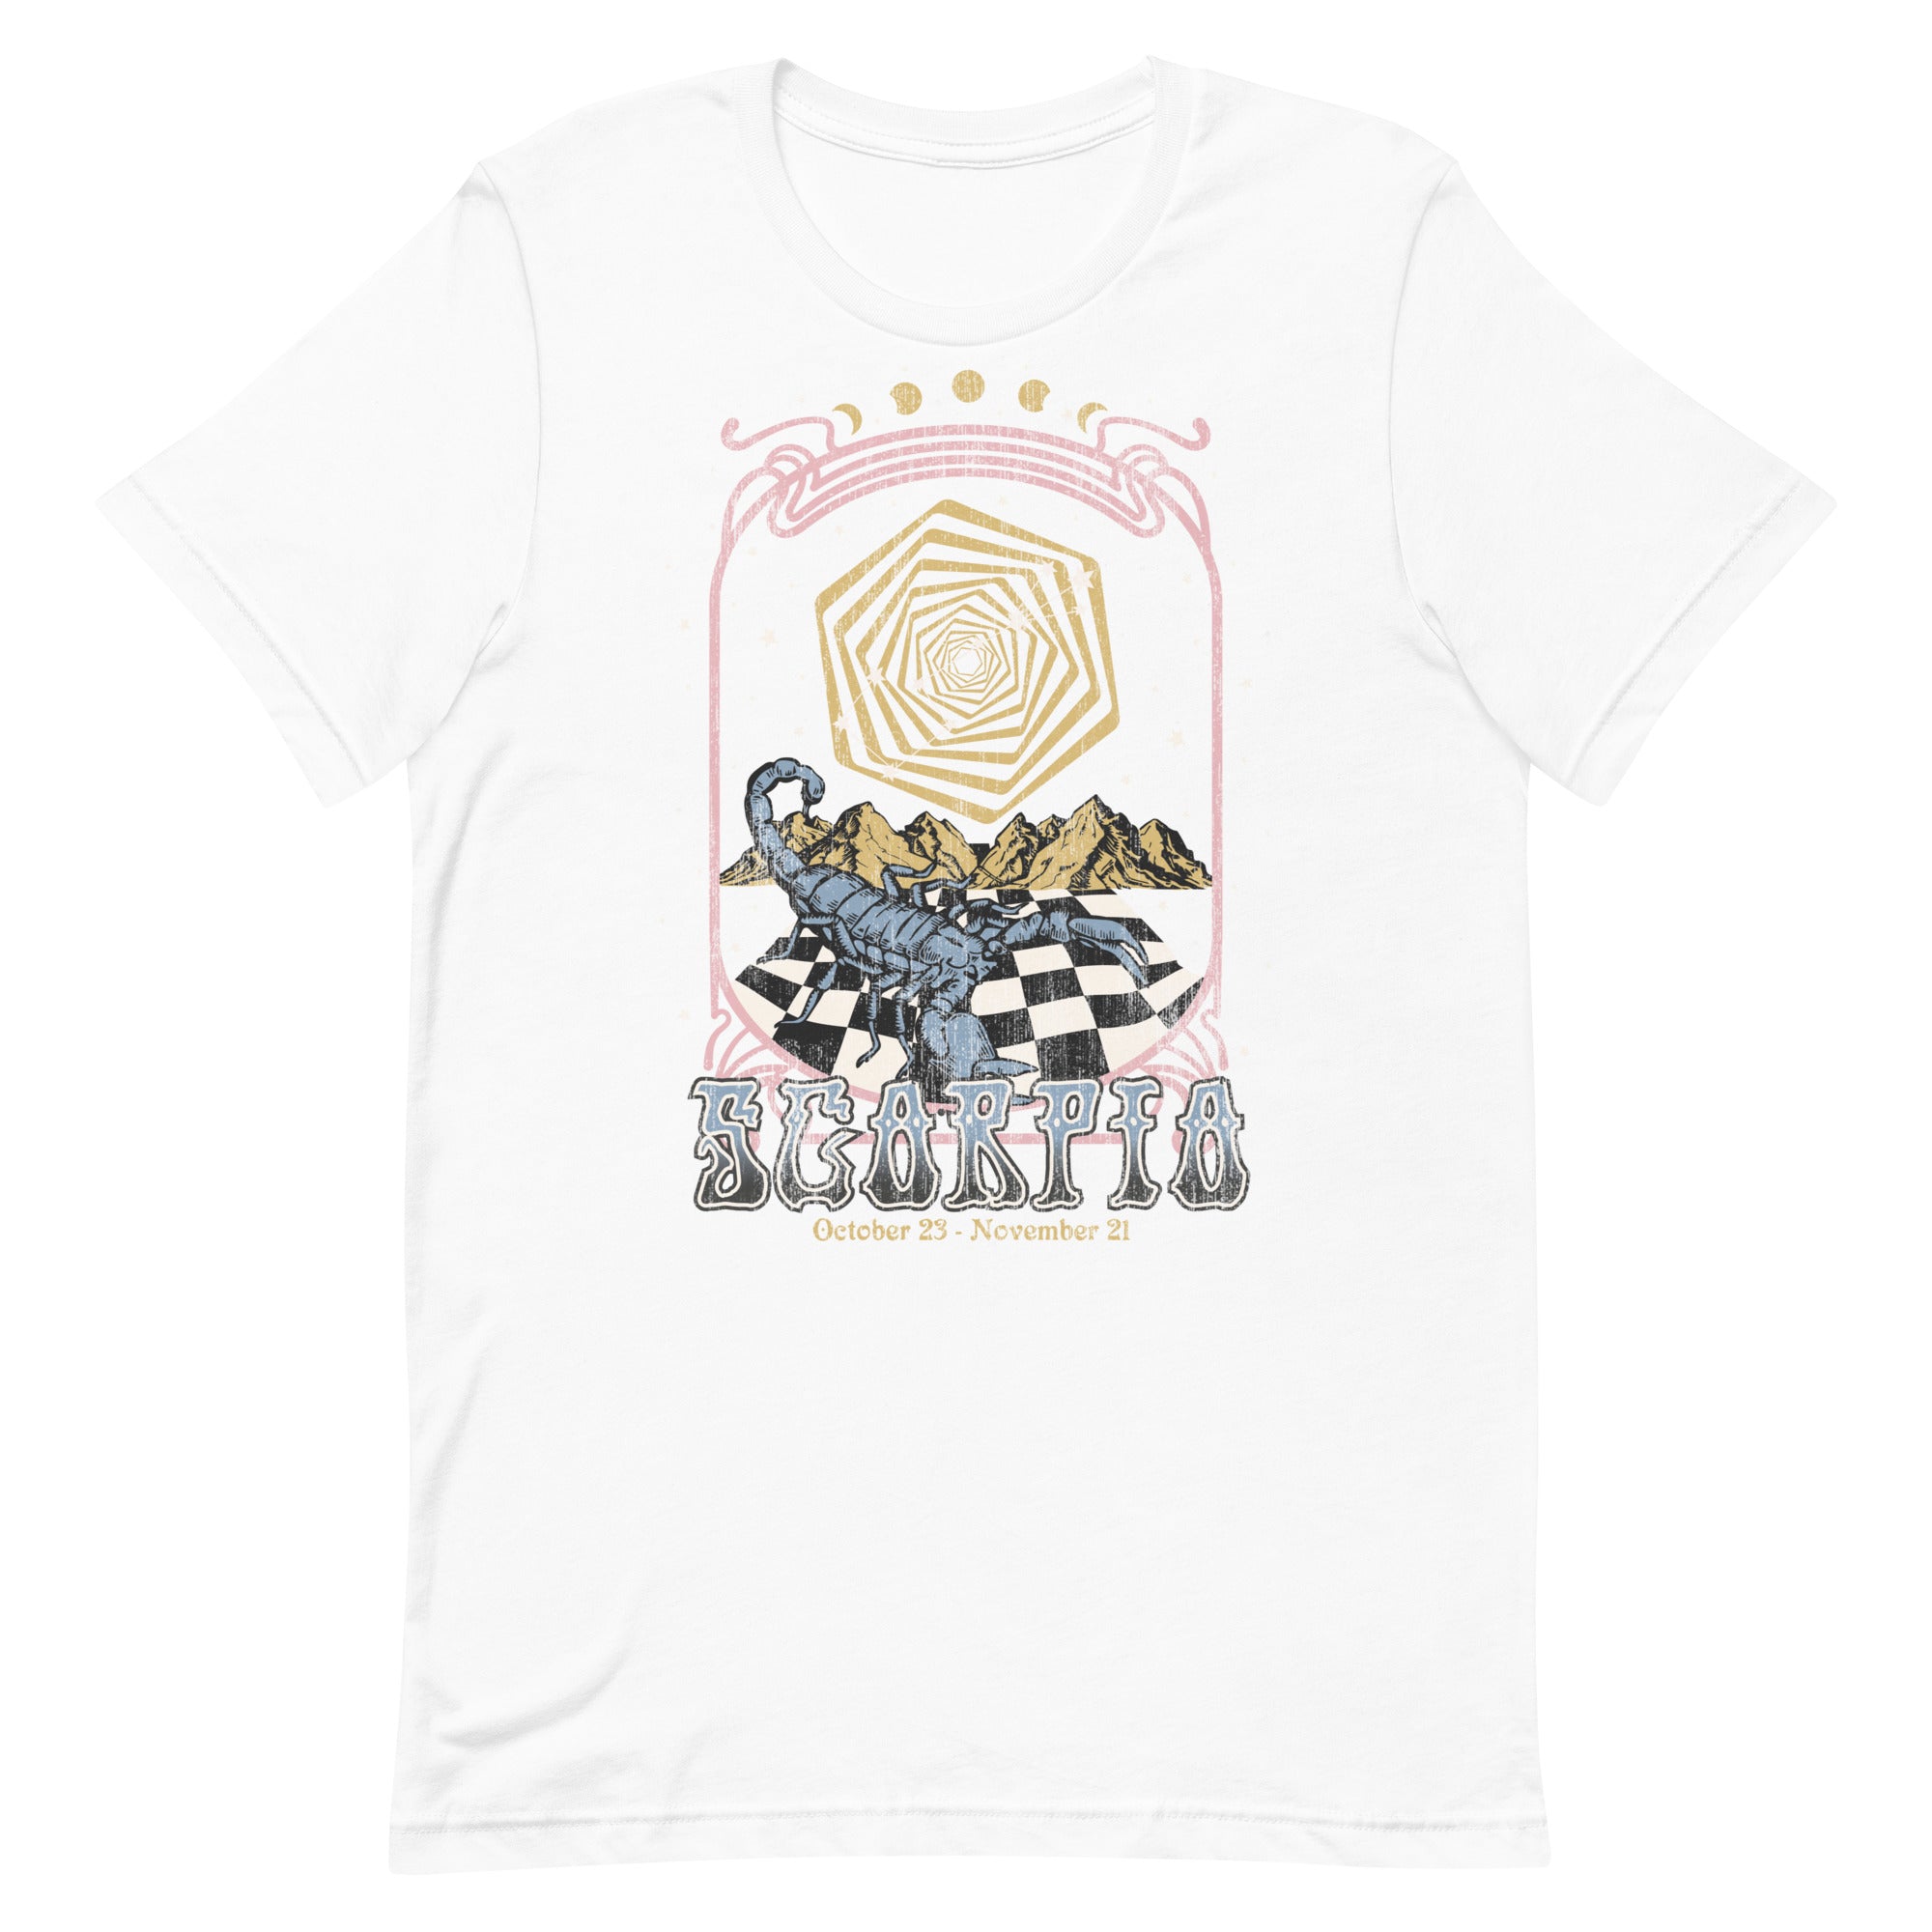 Scorpio Band T-Shirt Inspired Graphic Tee